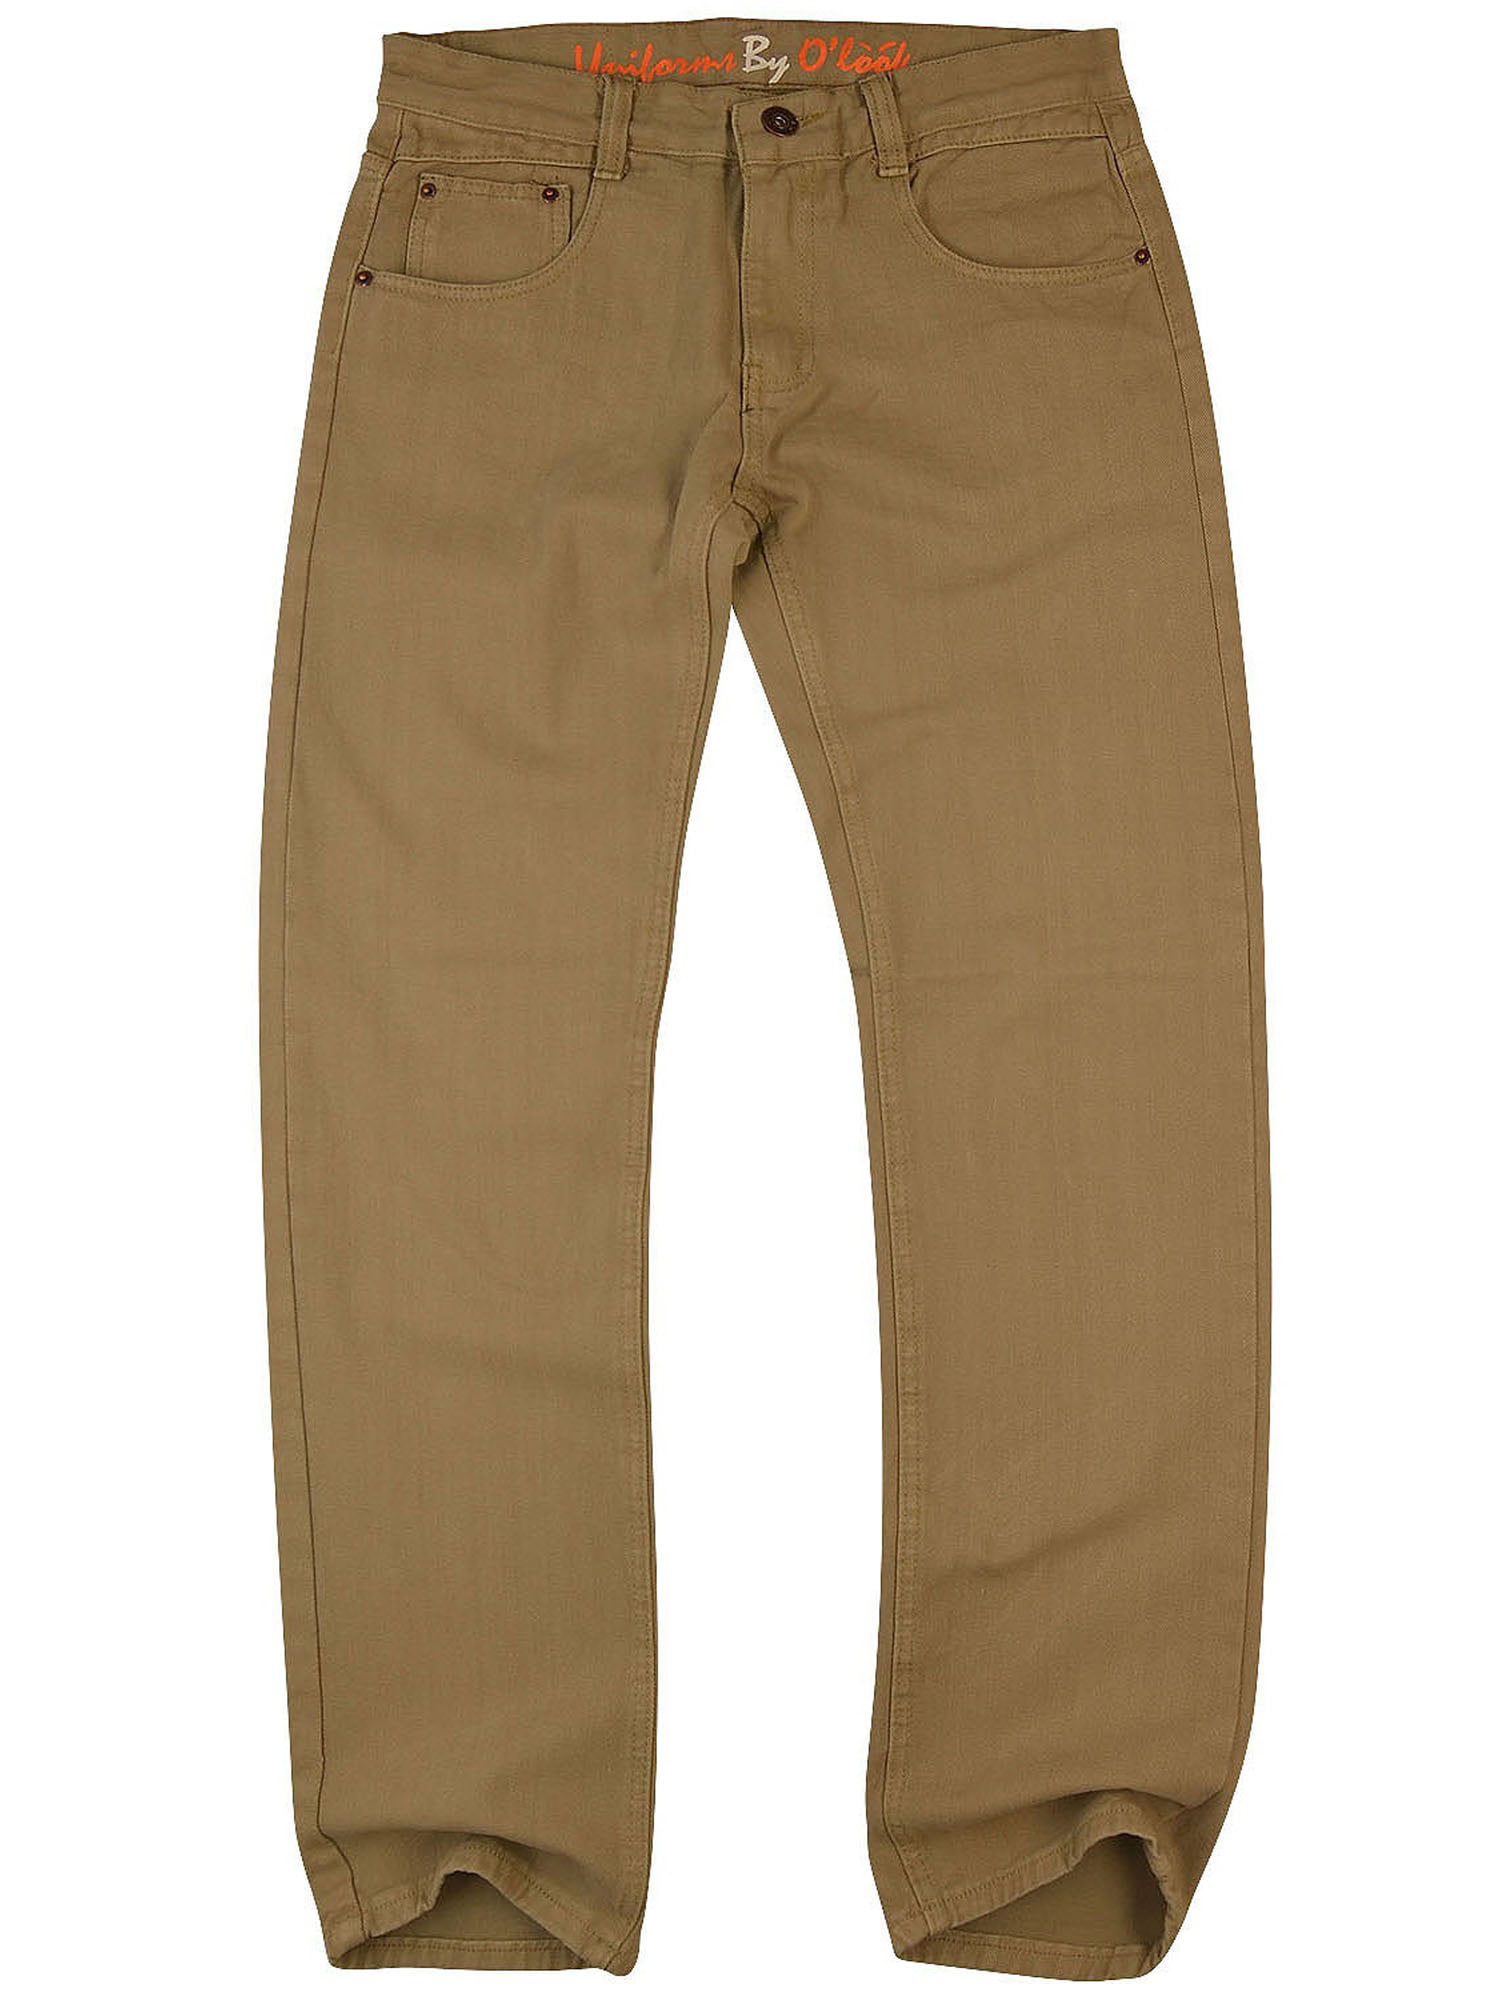 O'Look Men's Color Slim Fit Jean Pants 730- 34X33 - Khaki Color ...